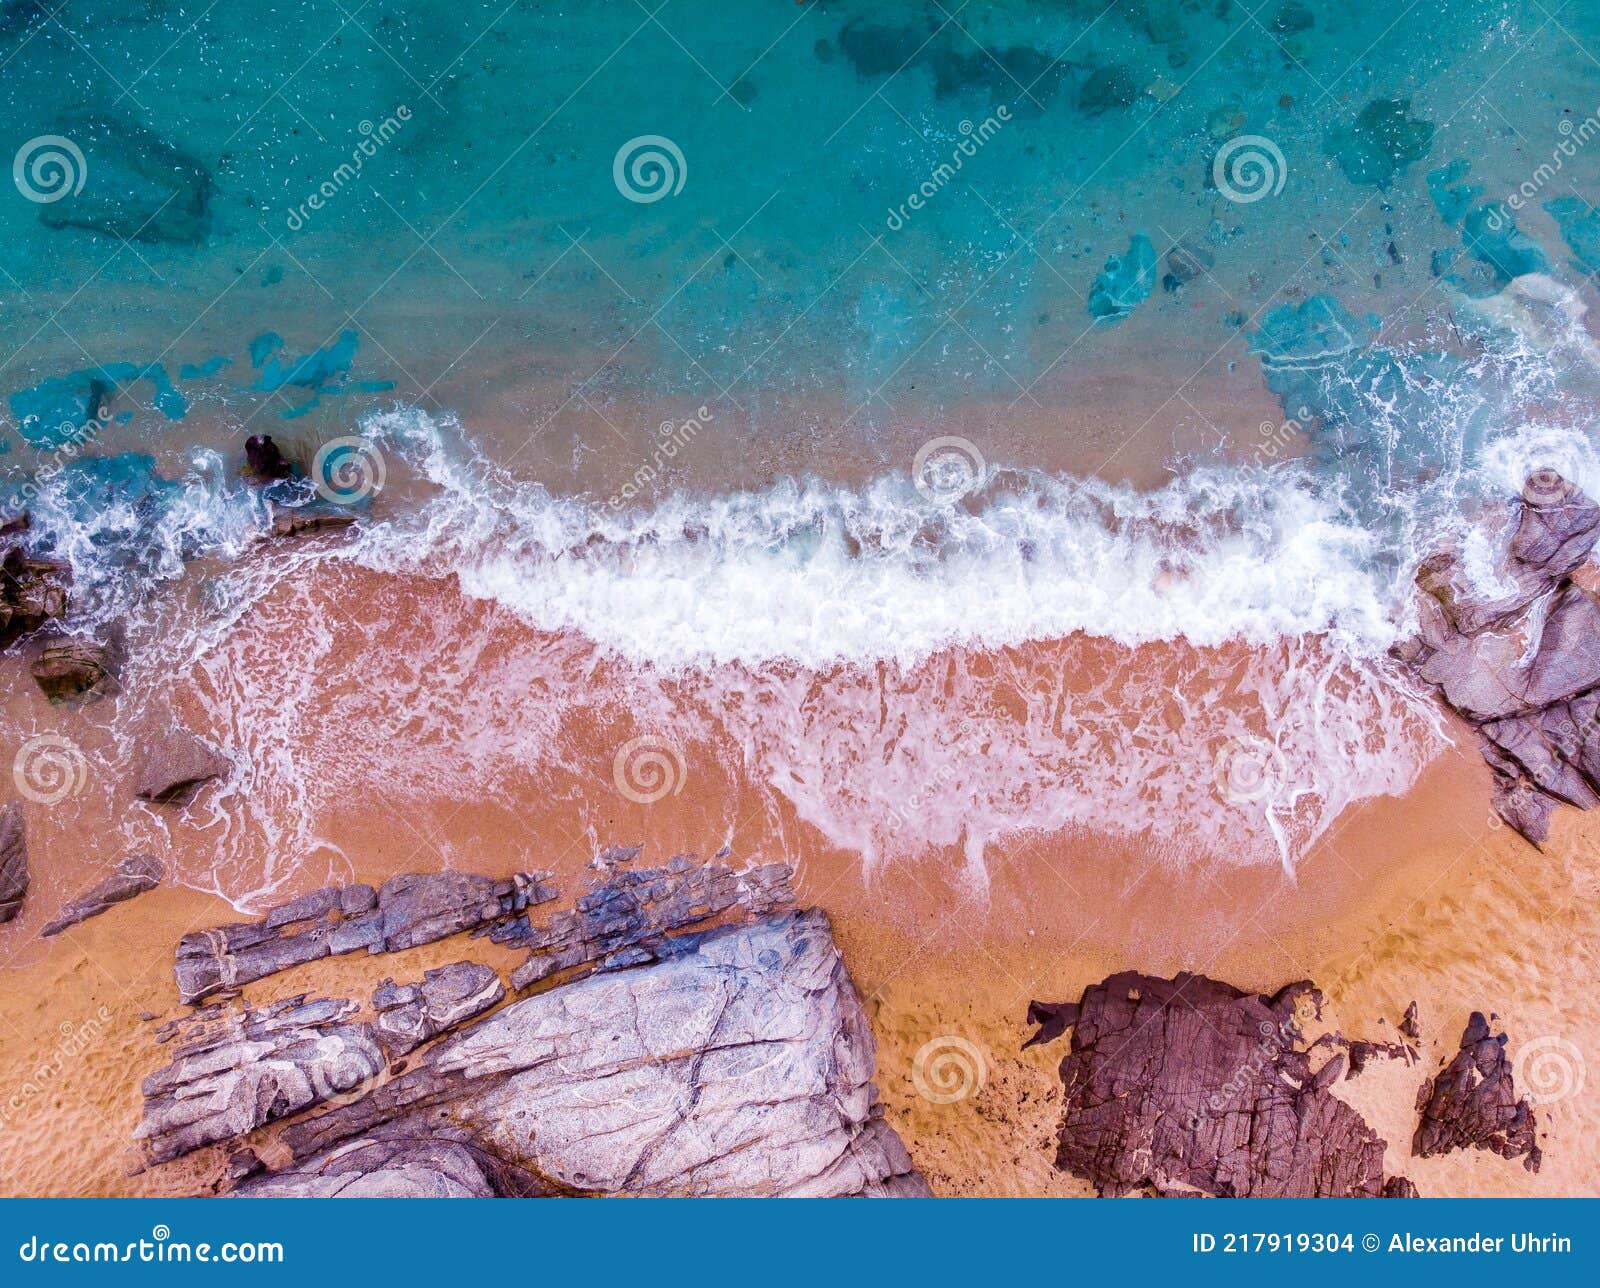 ÃÂerial view. rocks on the coast of lloret de mar in a beautiful summer day,sandy beach, costa brava, catalonia, spain.